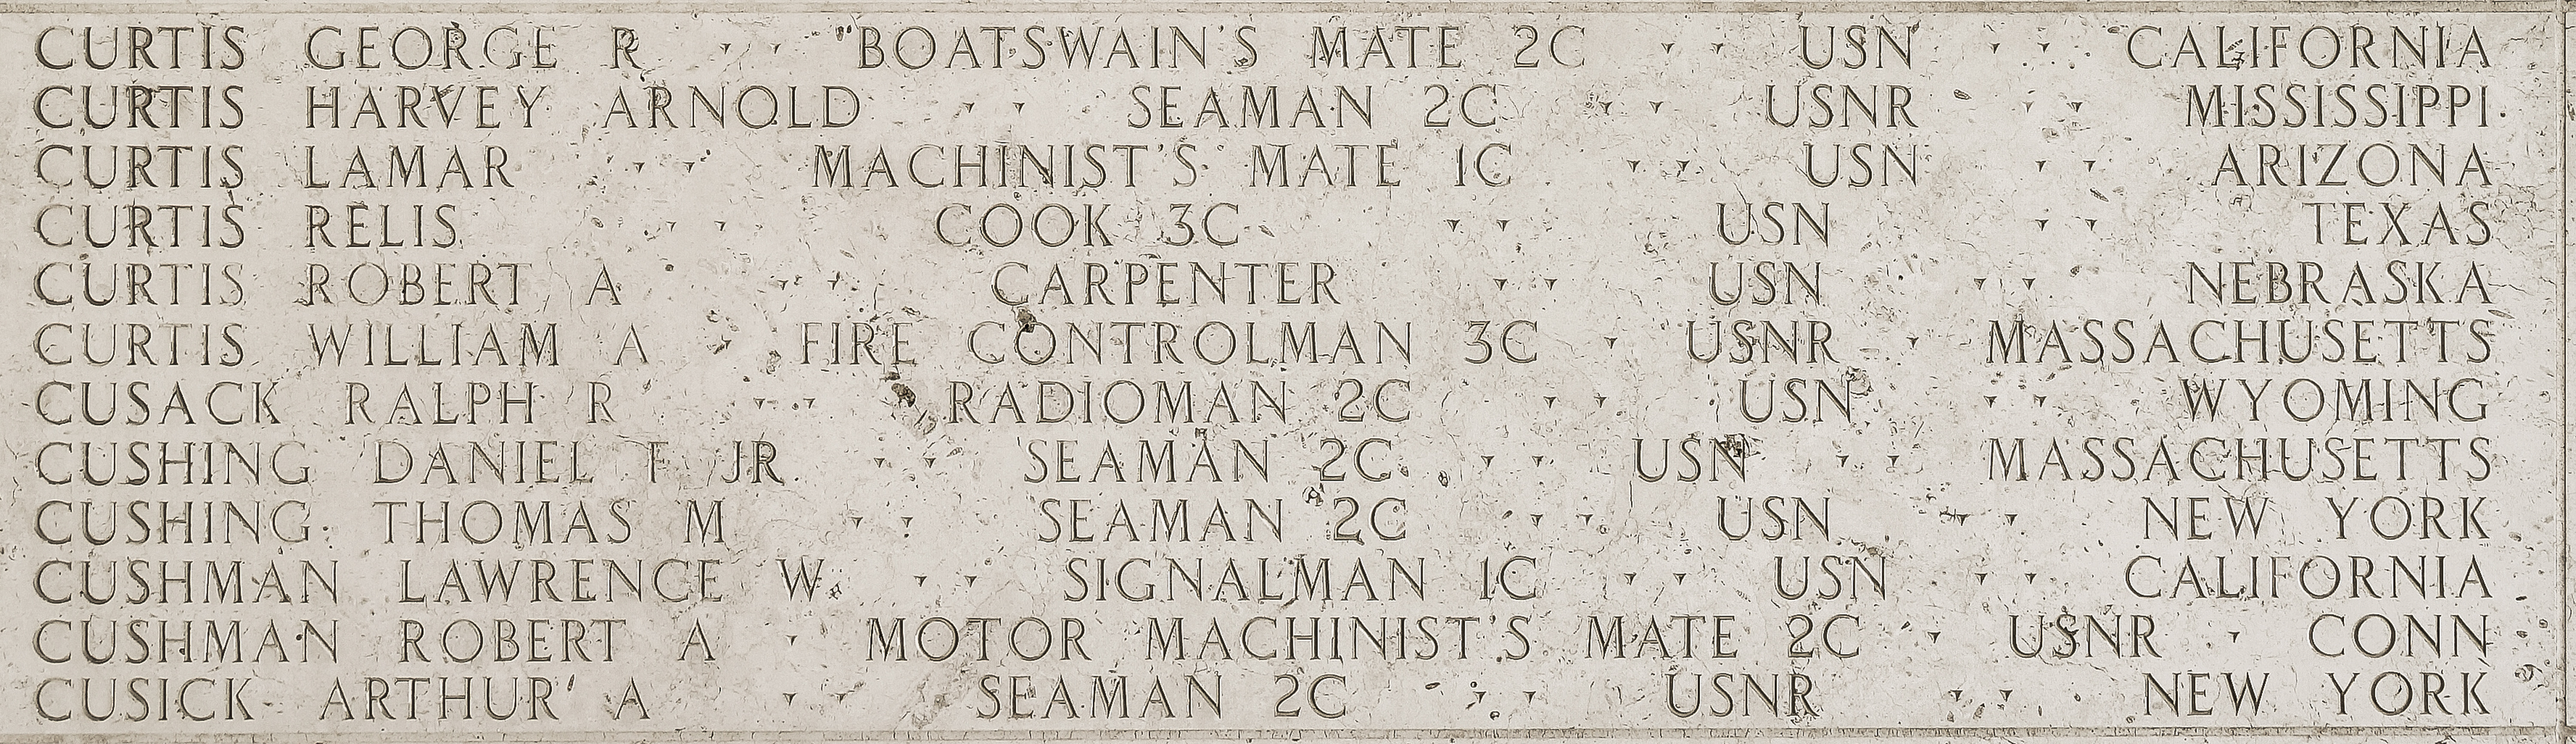 Robert A. Cushman, Motor Machinist's Mate Second Class